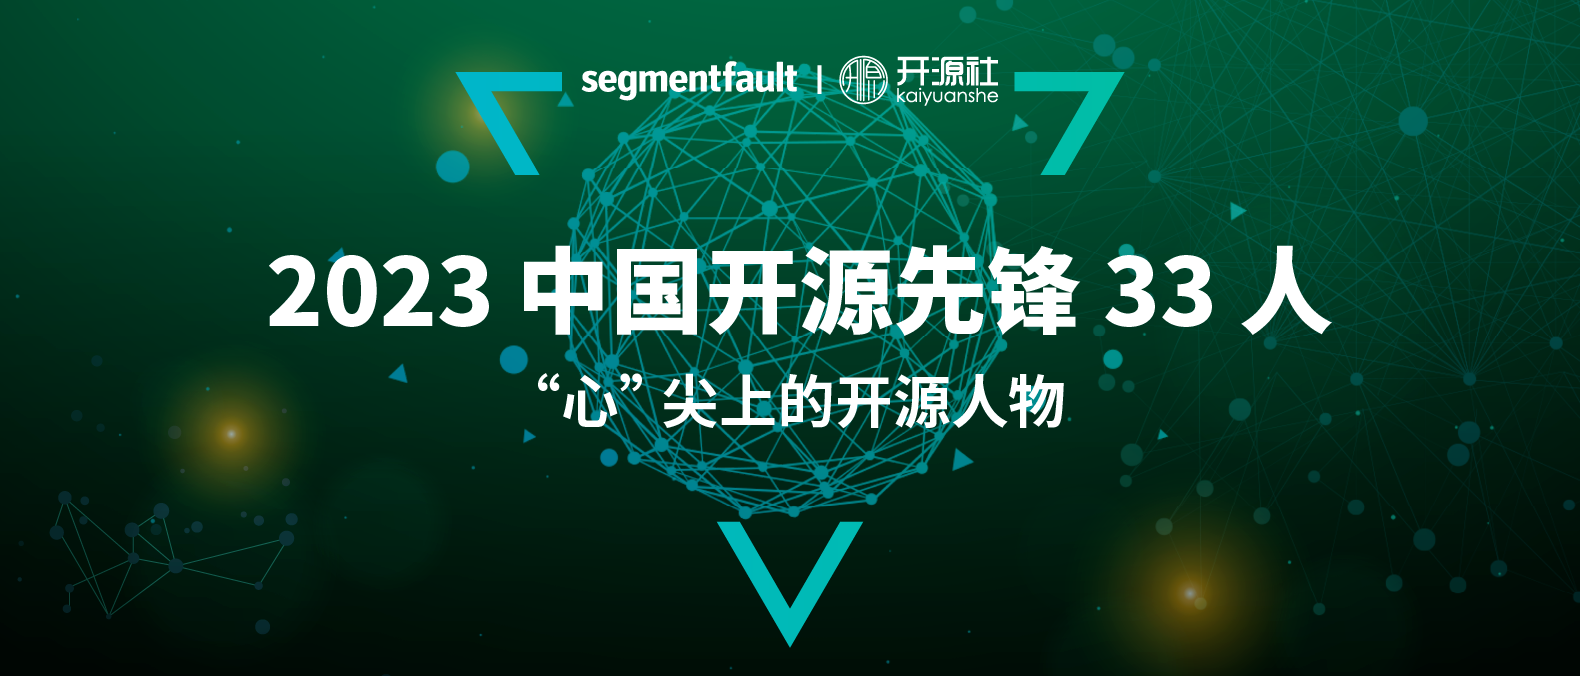 祝贺！openKylin副秘书长刘敏入选「2023 中国开源先锋 33 人之心尖上的开源人物」